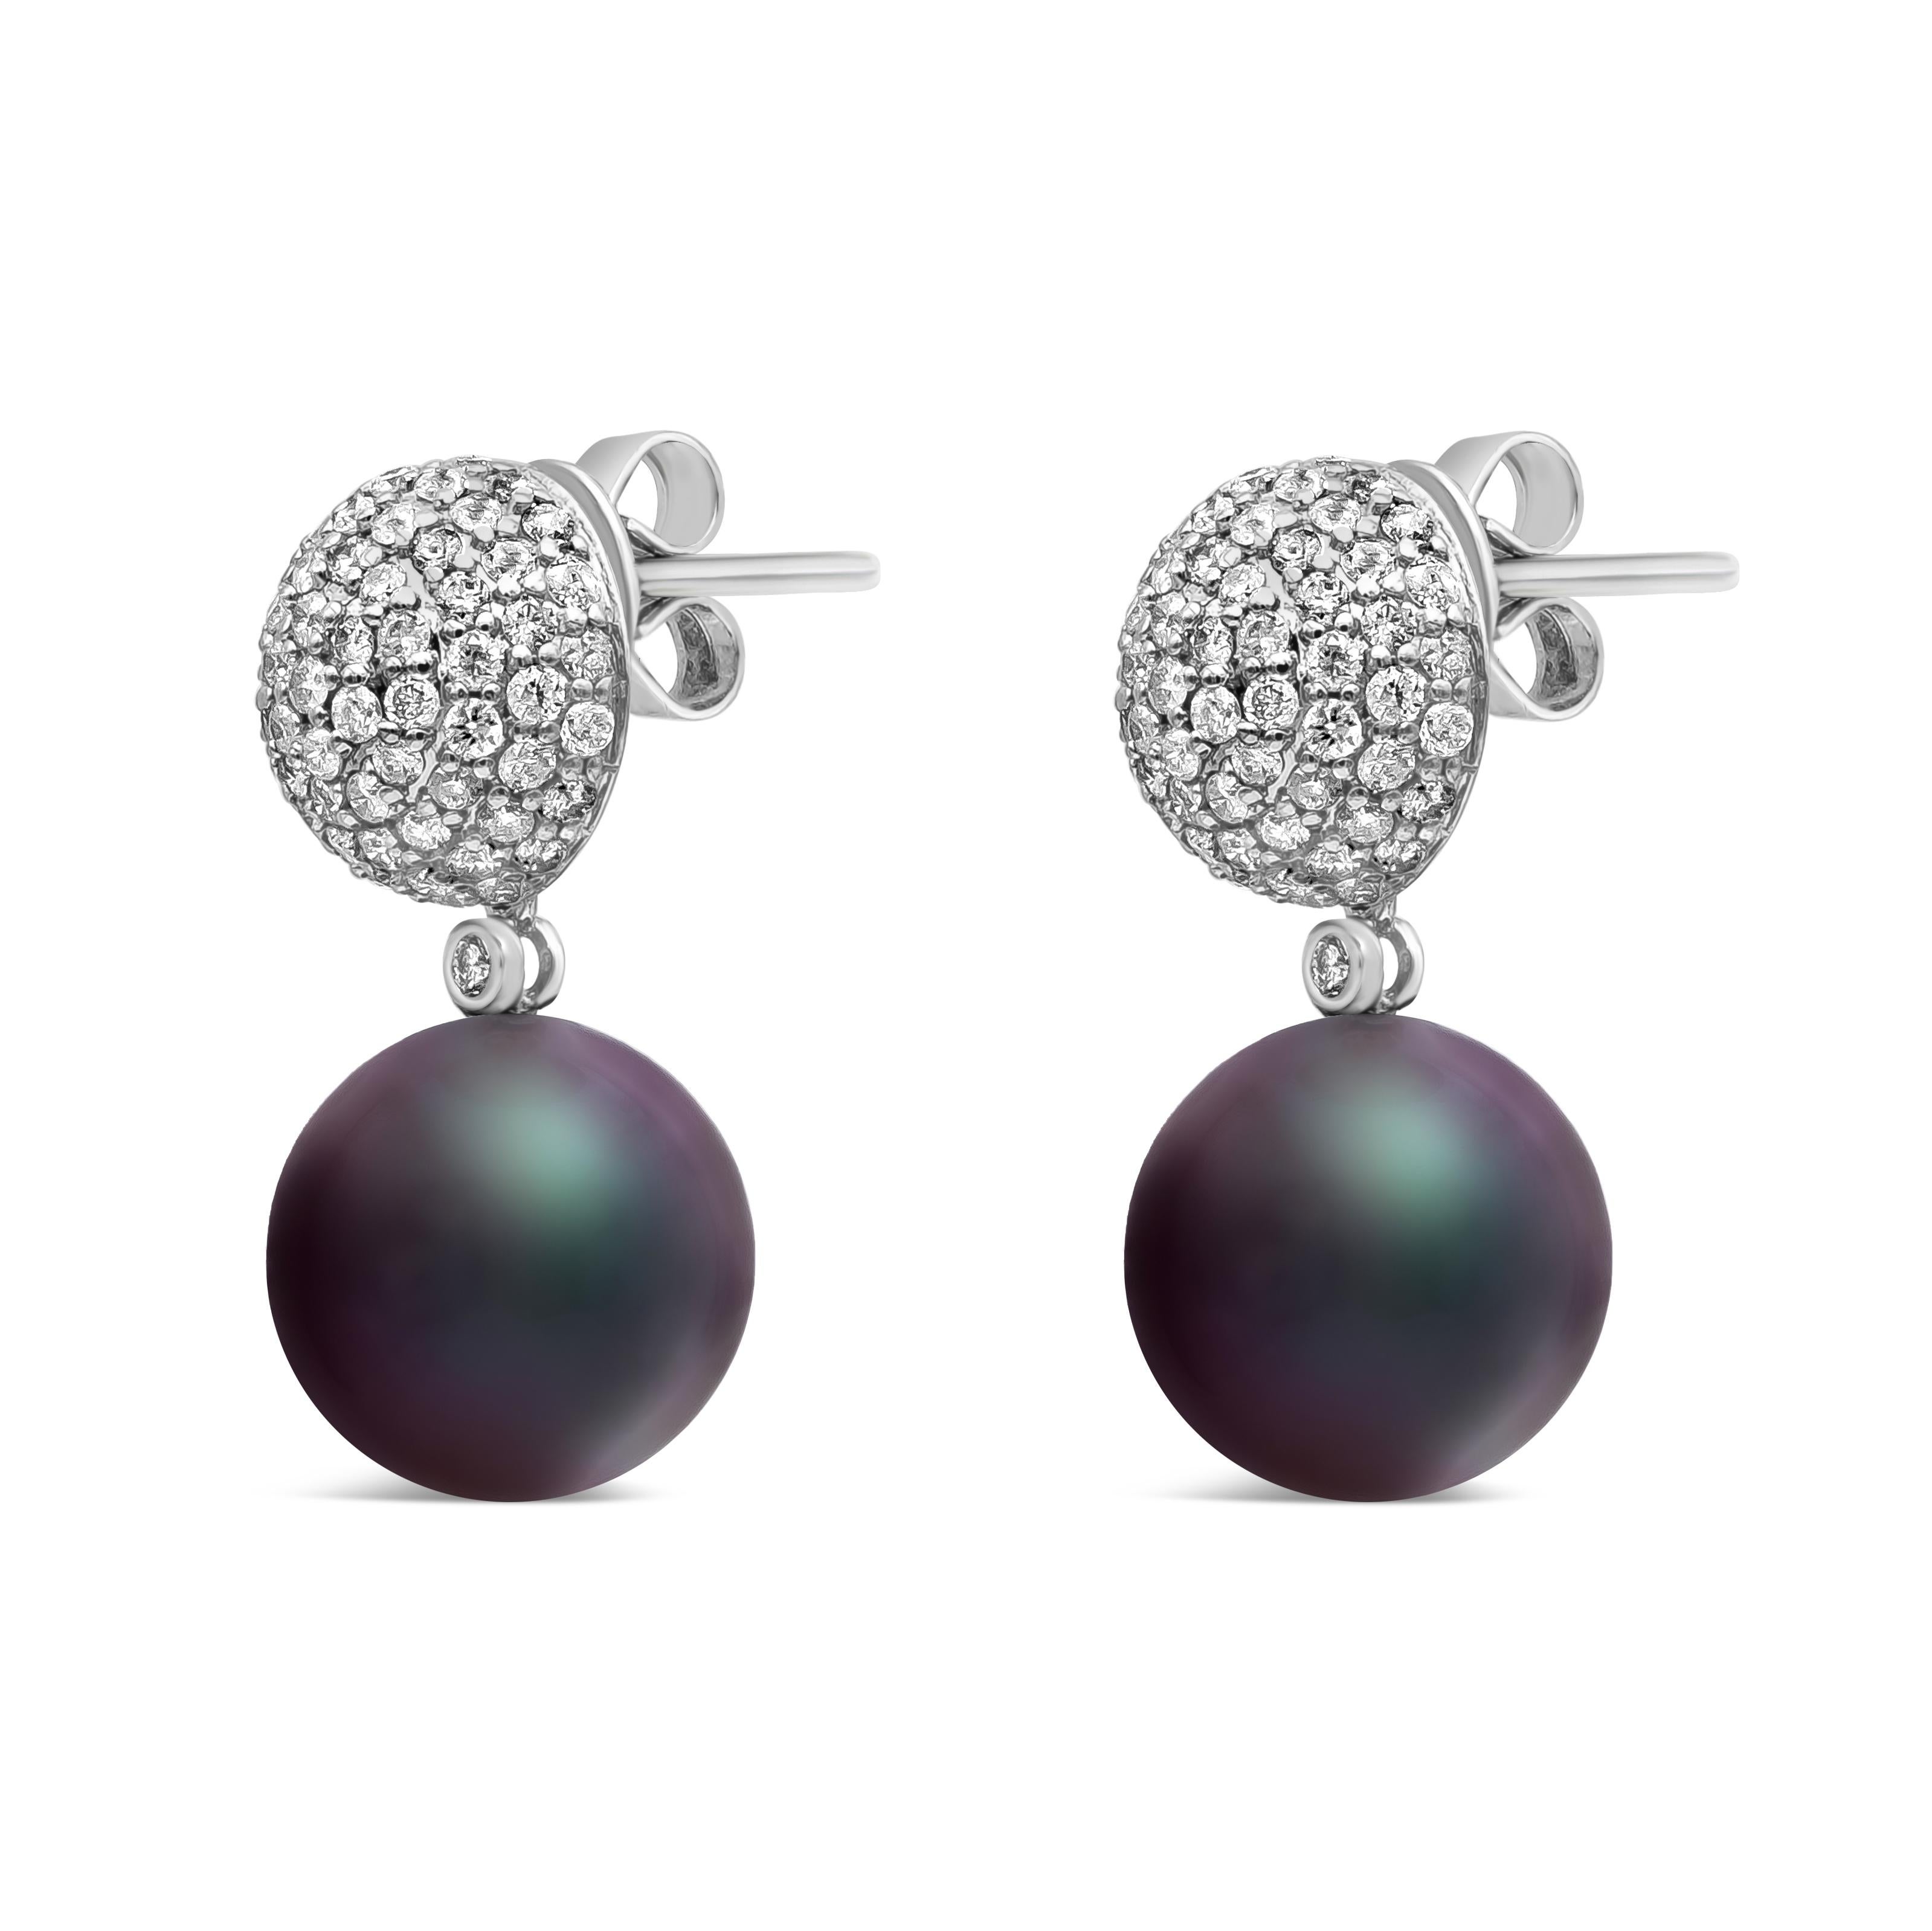 Boucles d'oreilles pendantes de style classique mettant en valeur des perles noires de Tahiti de 12-13 mm. Cette boucle d'oreille comporte 142 diamants ronds pesant au total 1,56 carats. Suspendu à une boule incrustée de diamants en or blanc 18